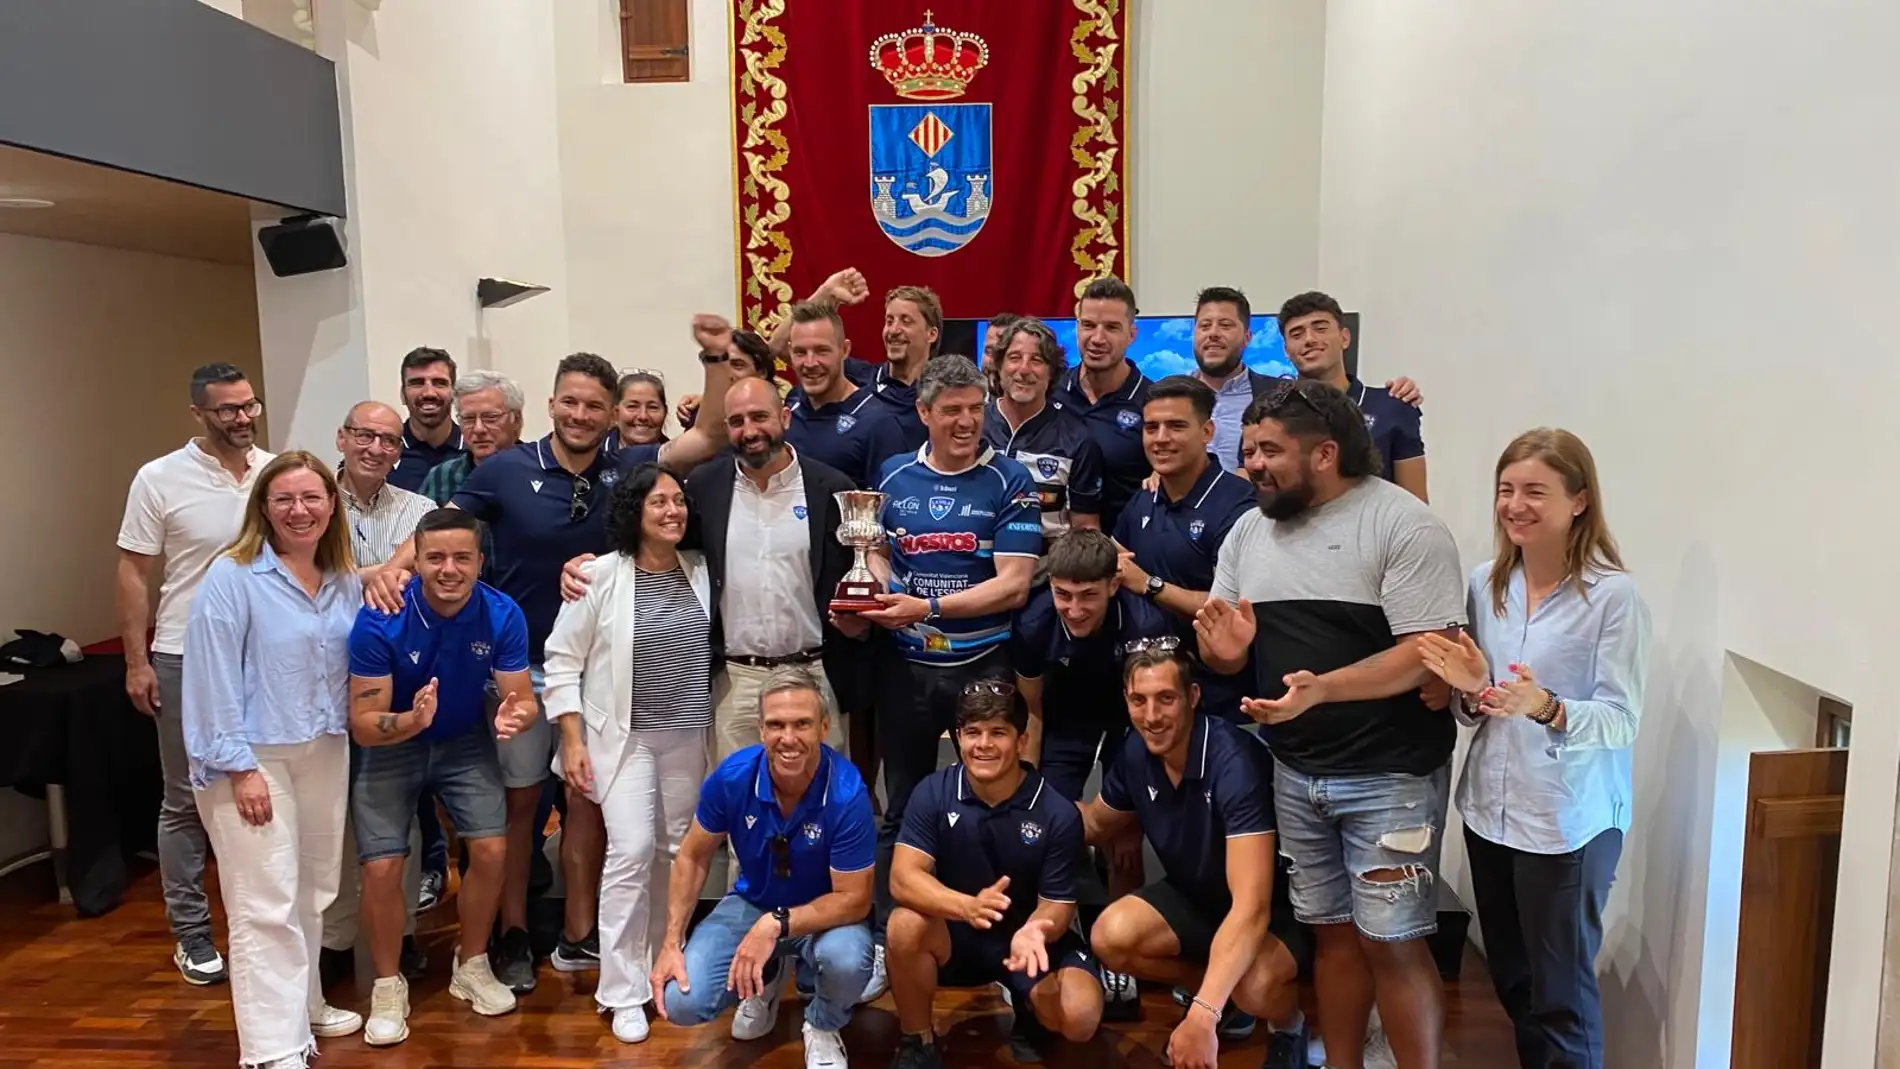 El Ayuntamiento de la Vila rinde homenaje a su equipo de Rugby por su ascenso a División de Honor